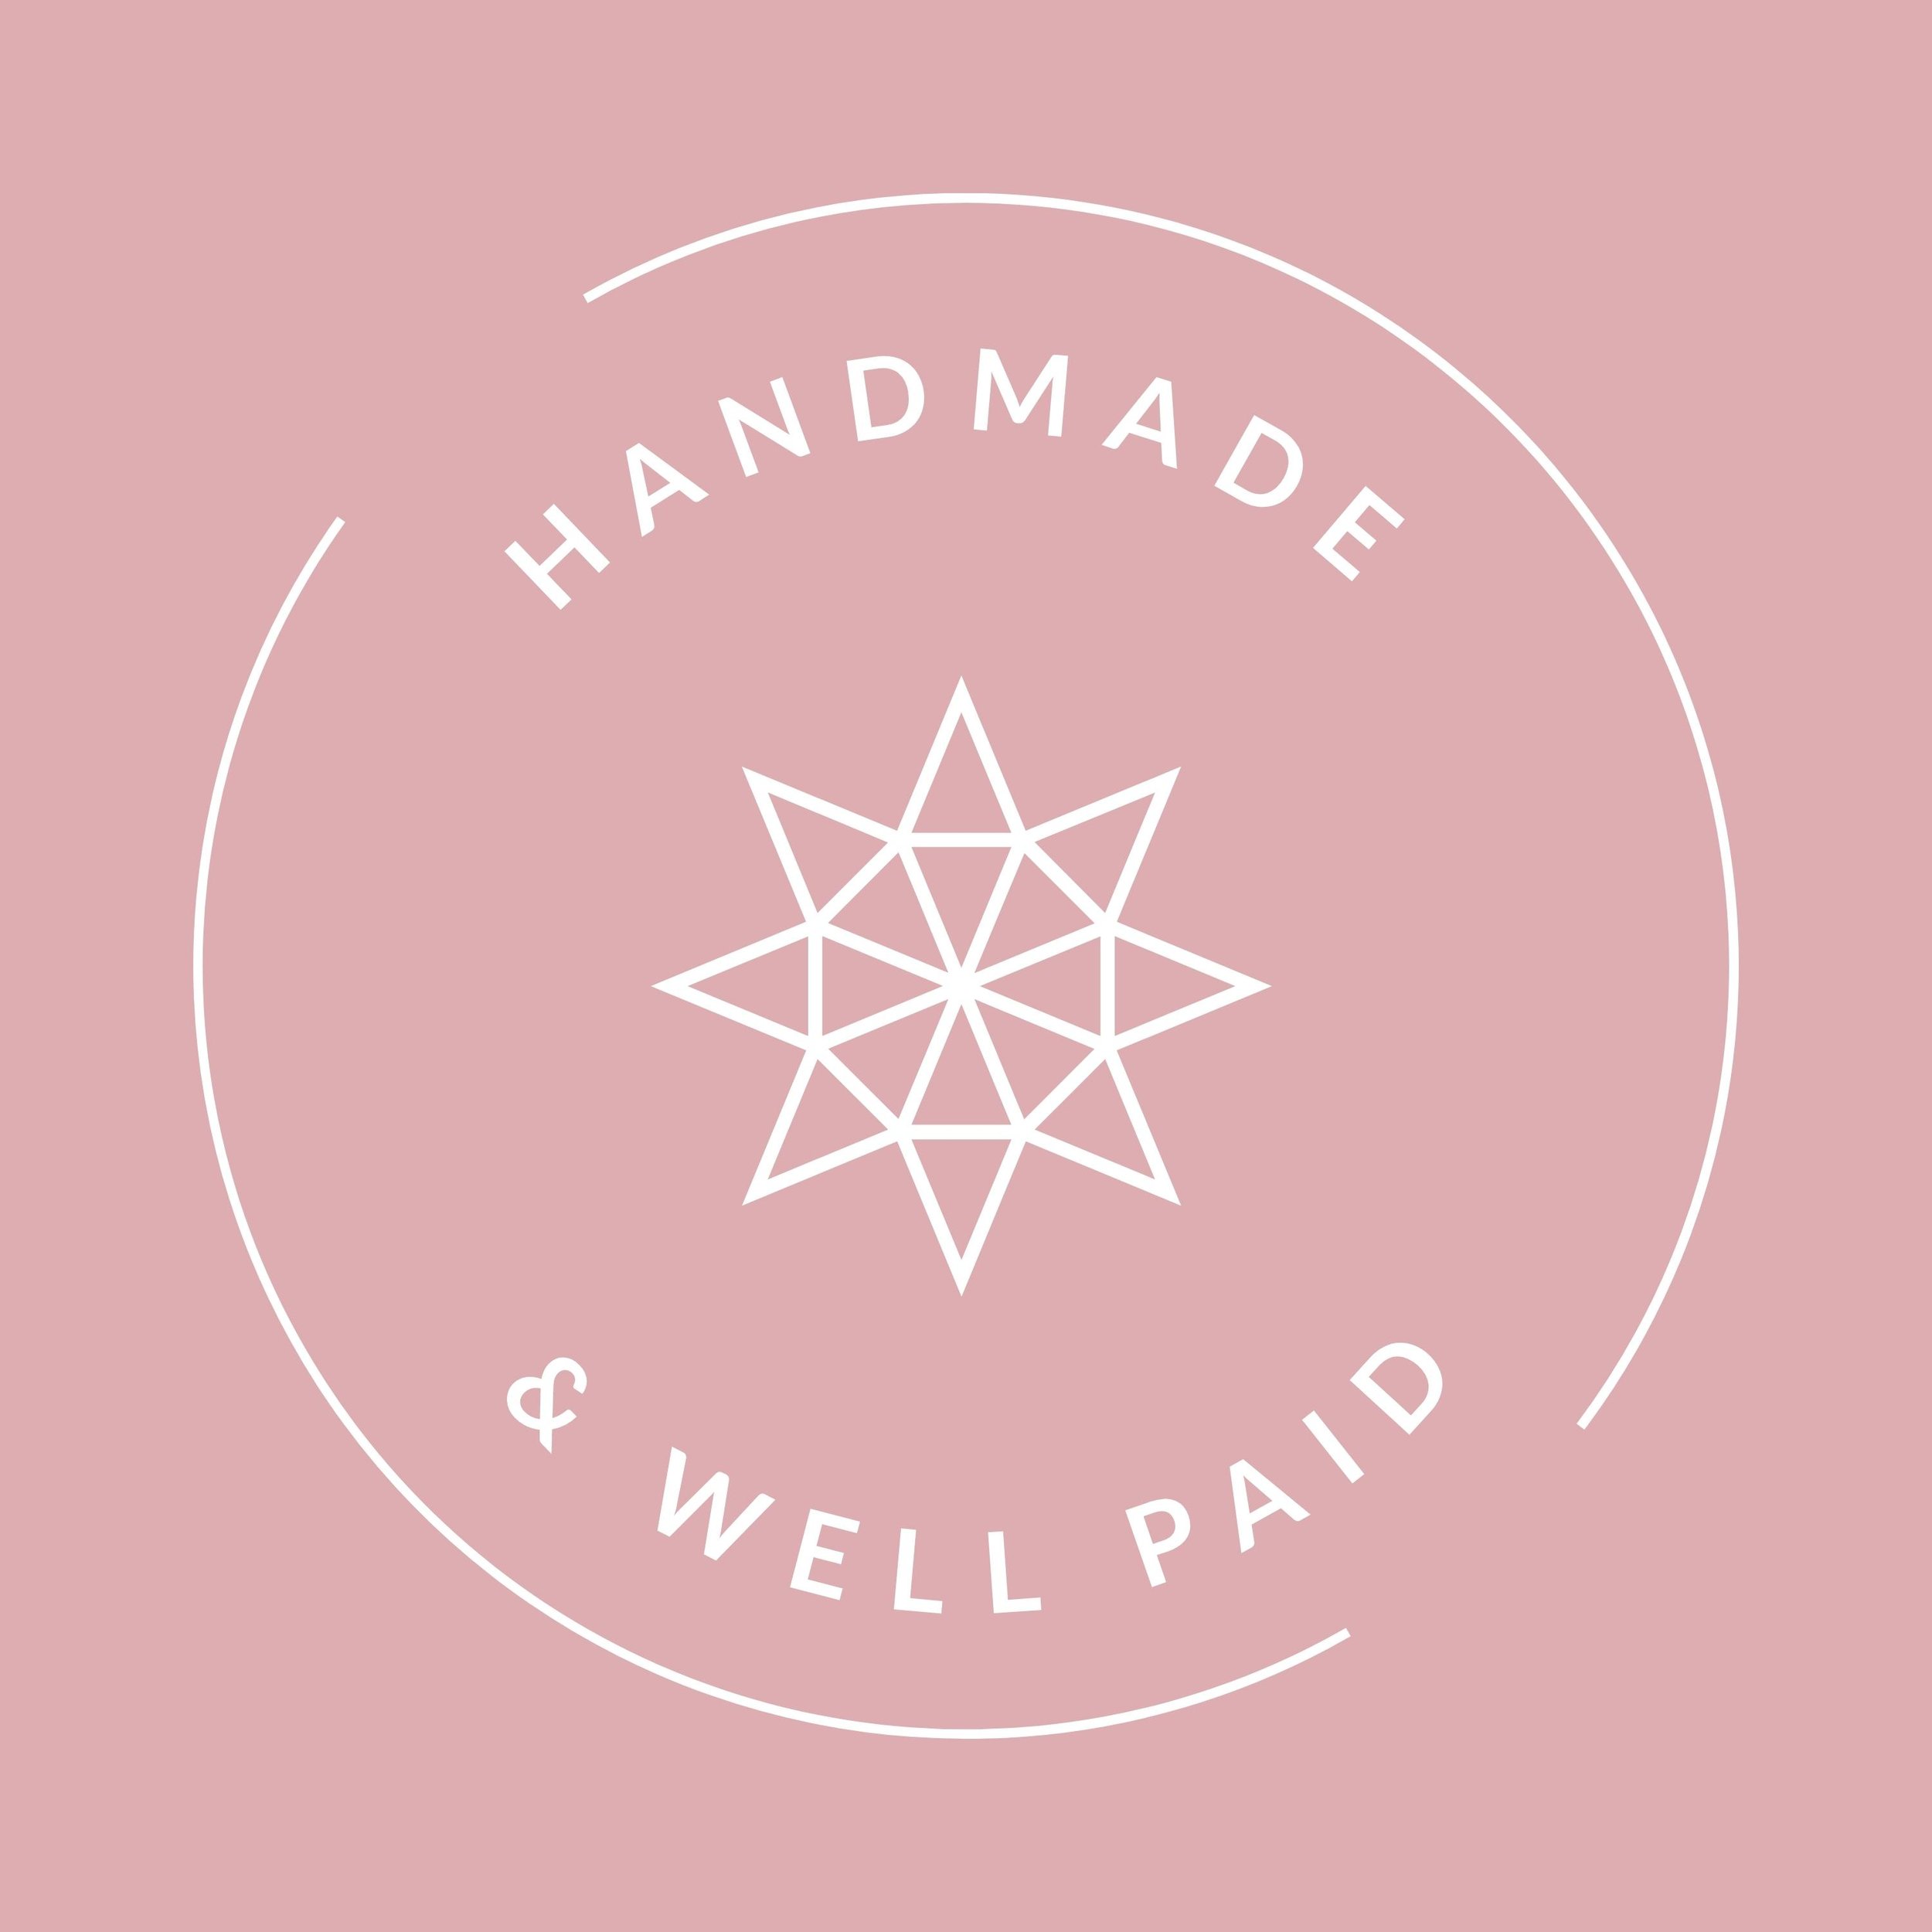 HandmadeWellPaid10.jpg